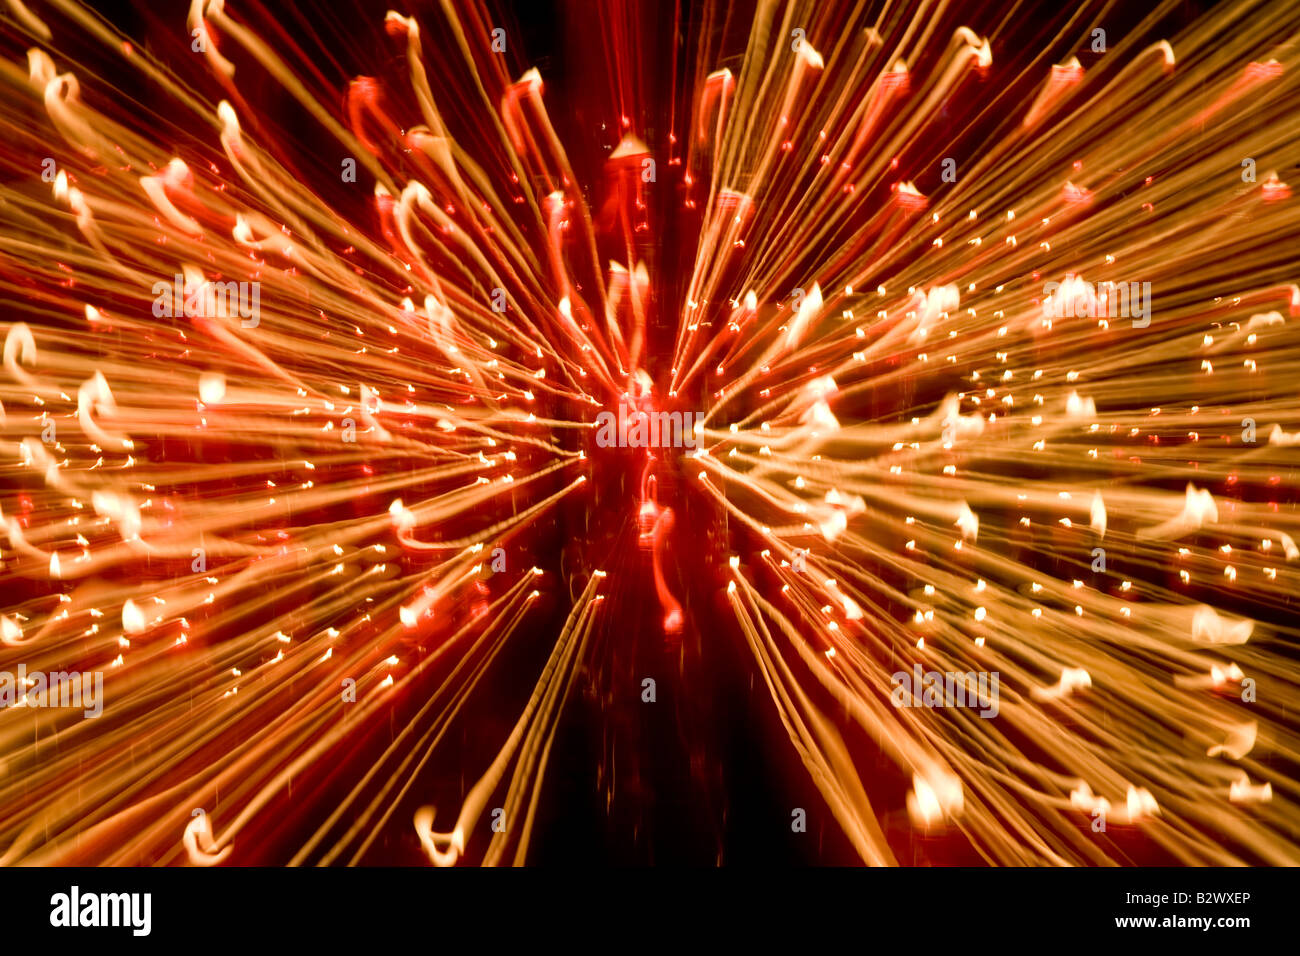 Candela fiamme Abstract prese con una lenta velocità di otturatore in una cattedrale Foto Stock